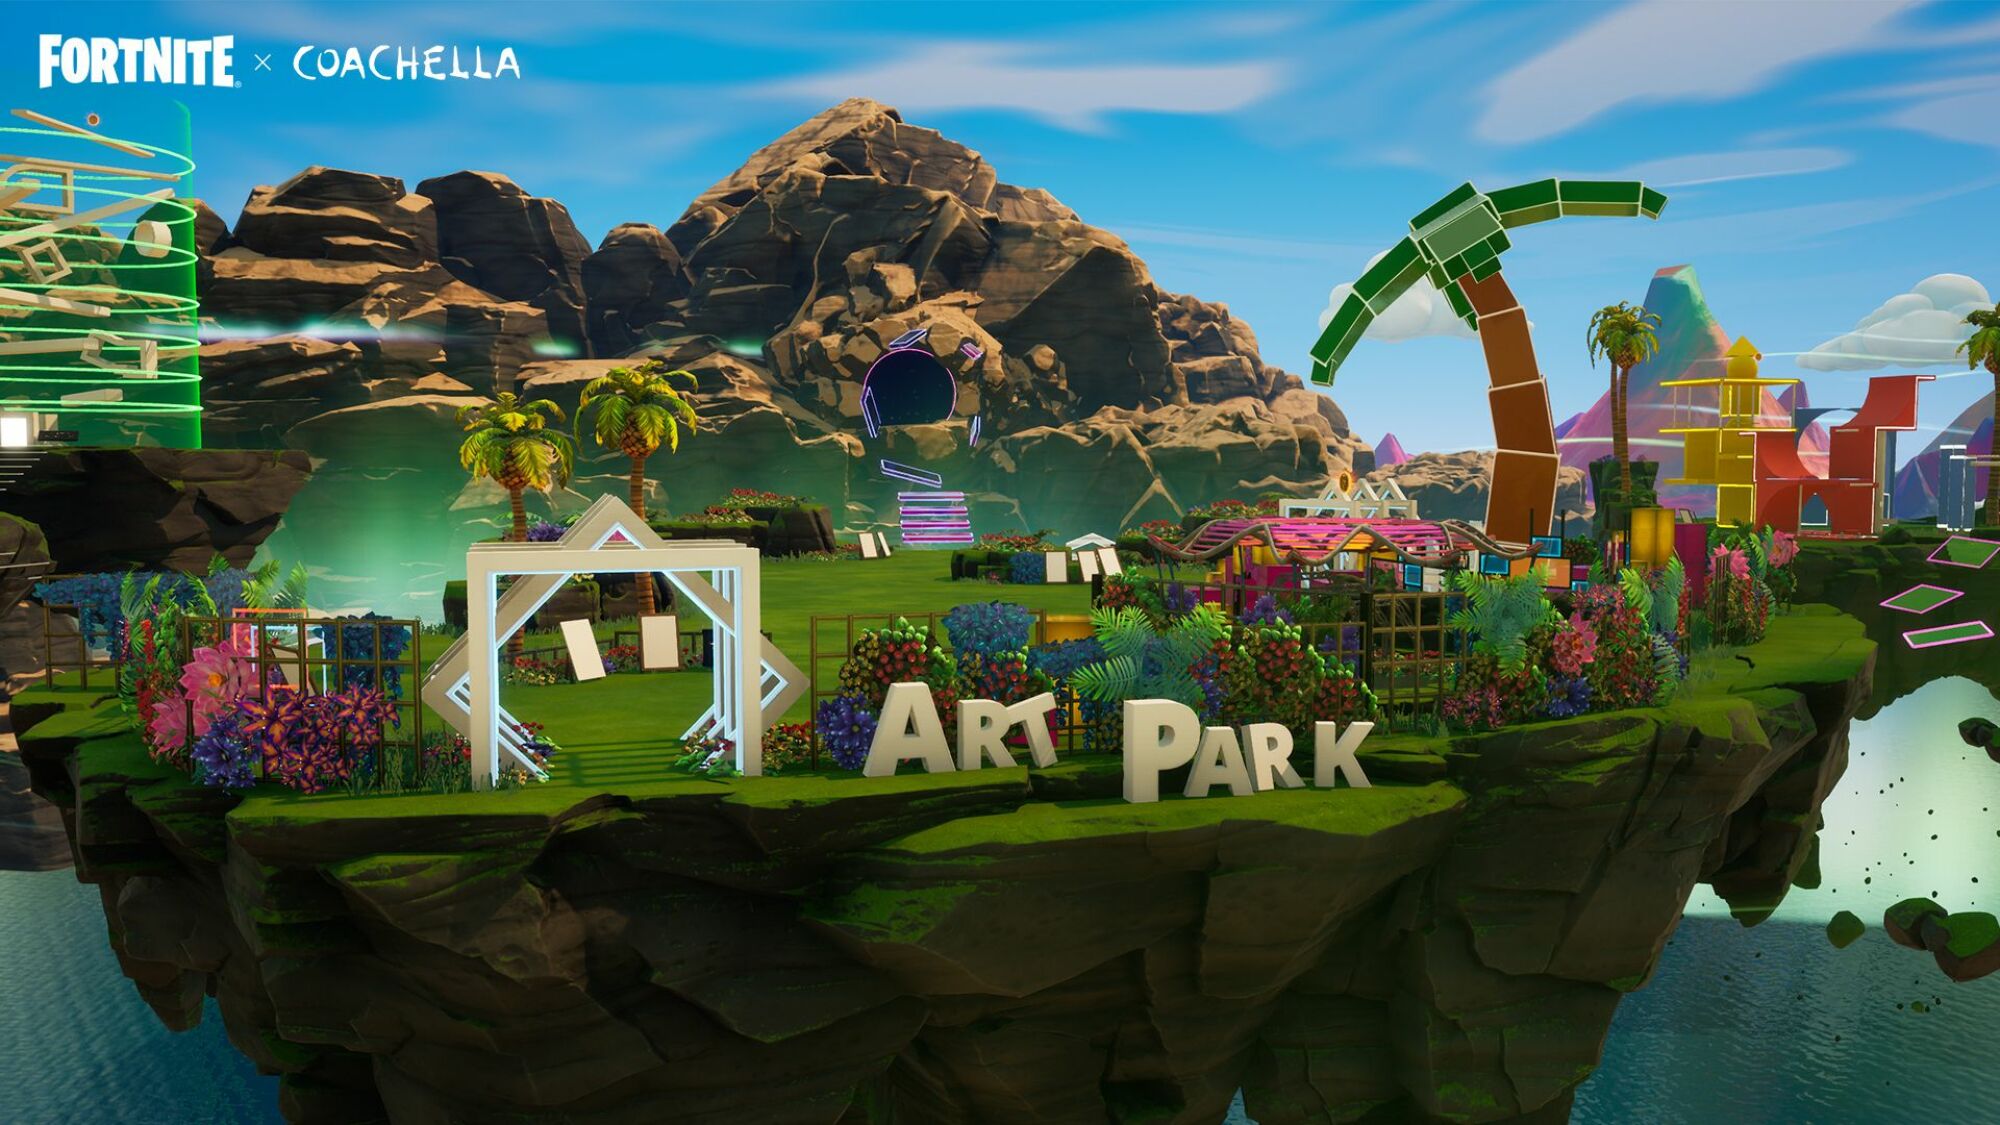 Une expérience Coachella virtuelle, mettant en vedette le 'Art Park'.